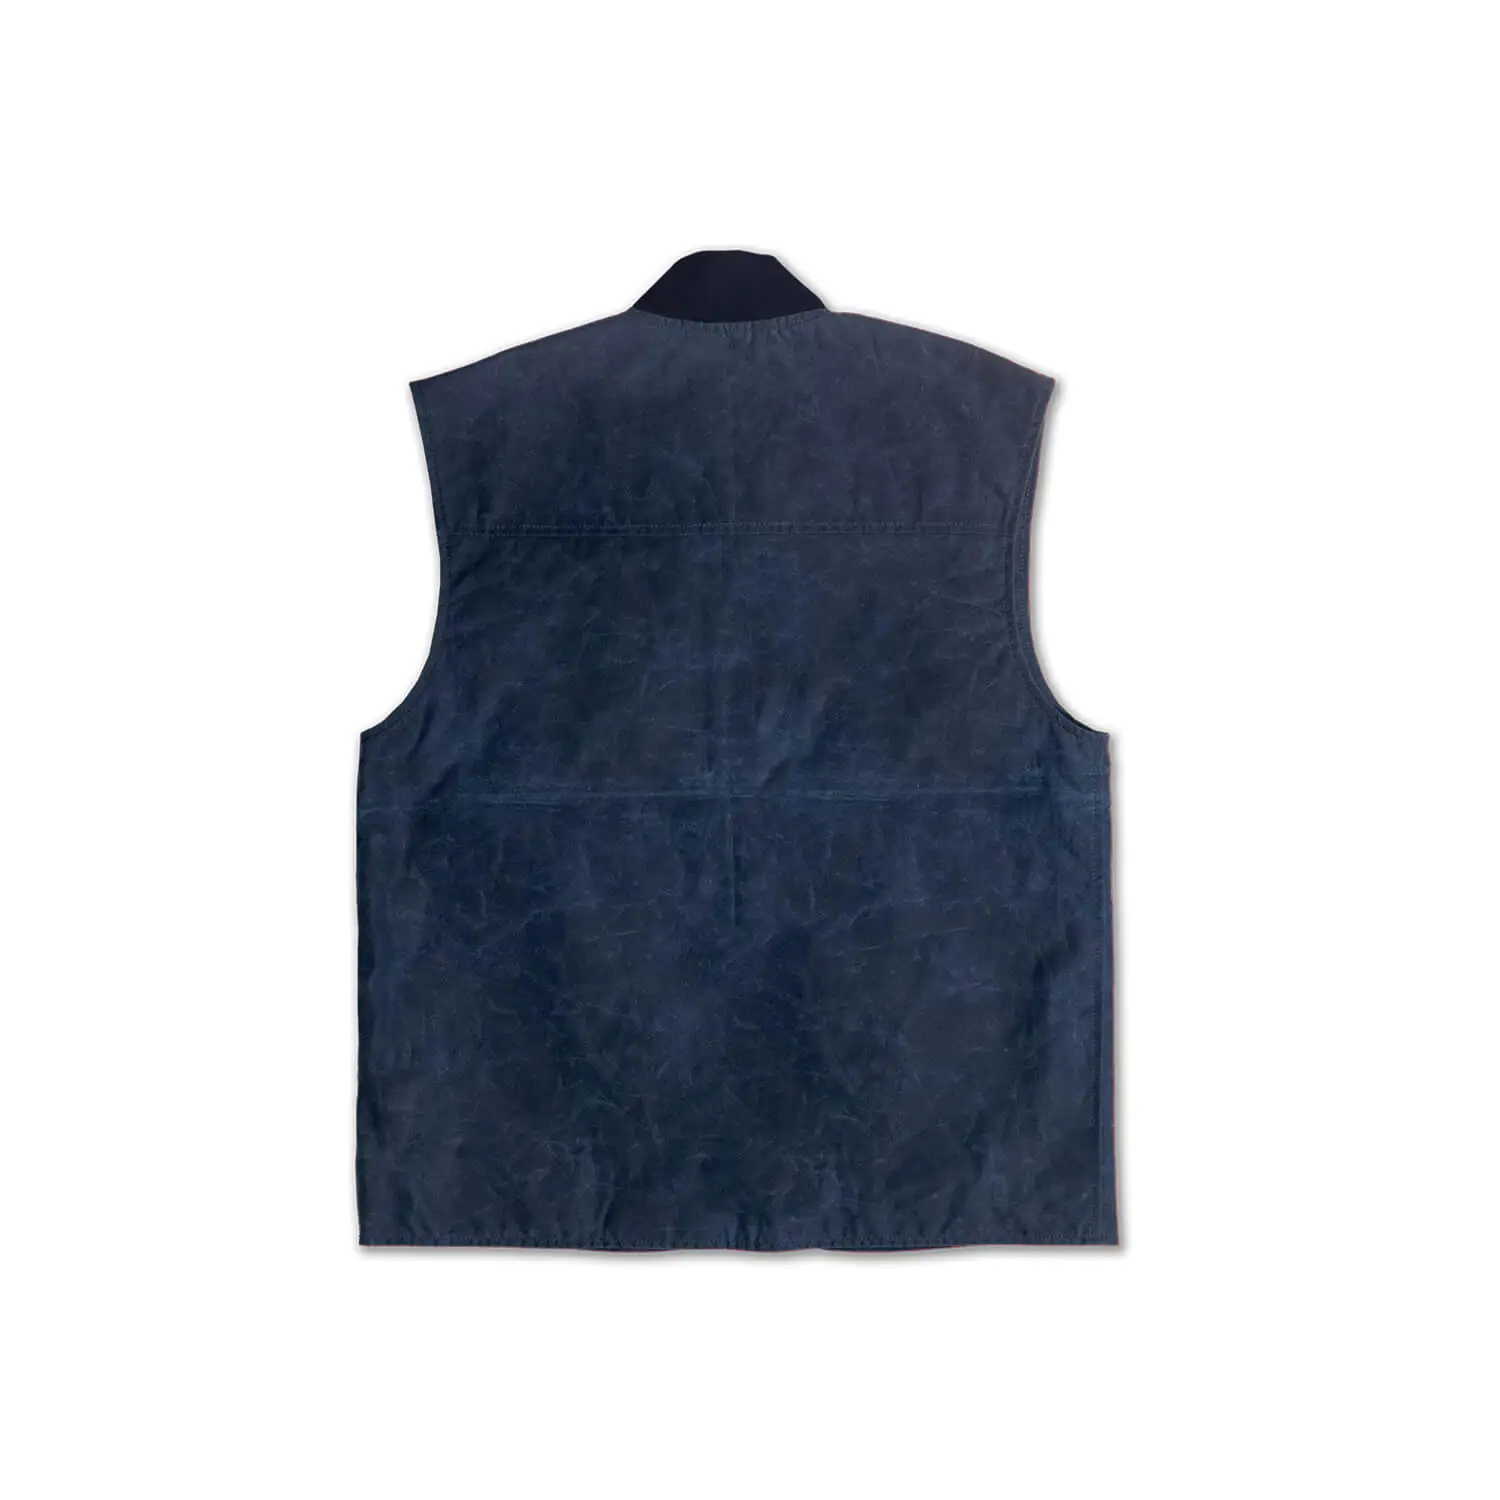 dmd.eu - VEST BLUE DMD – Gilet blue cotton waxed – back